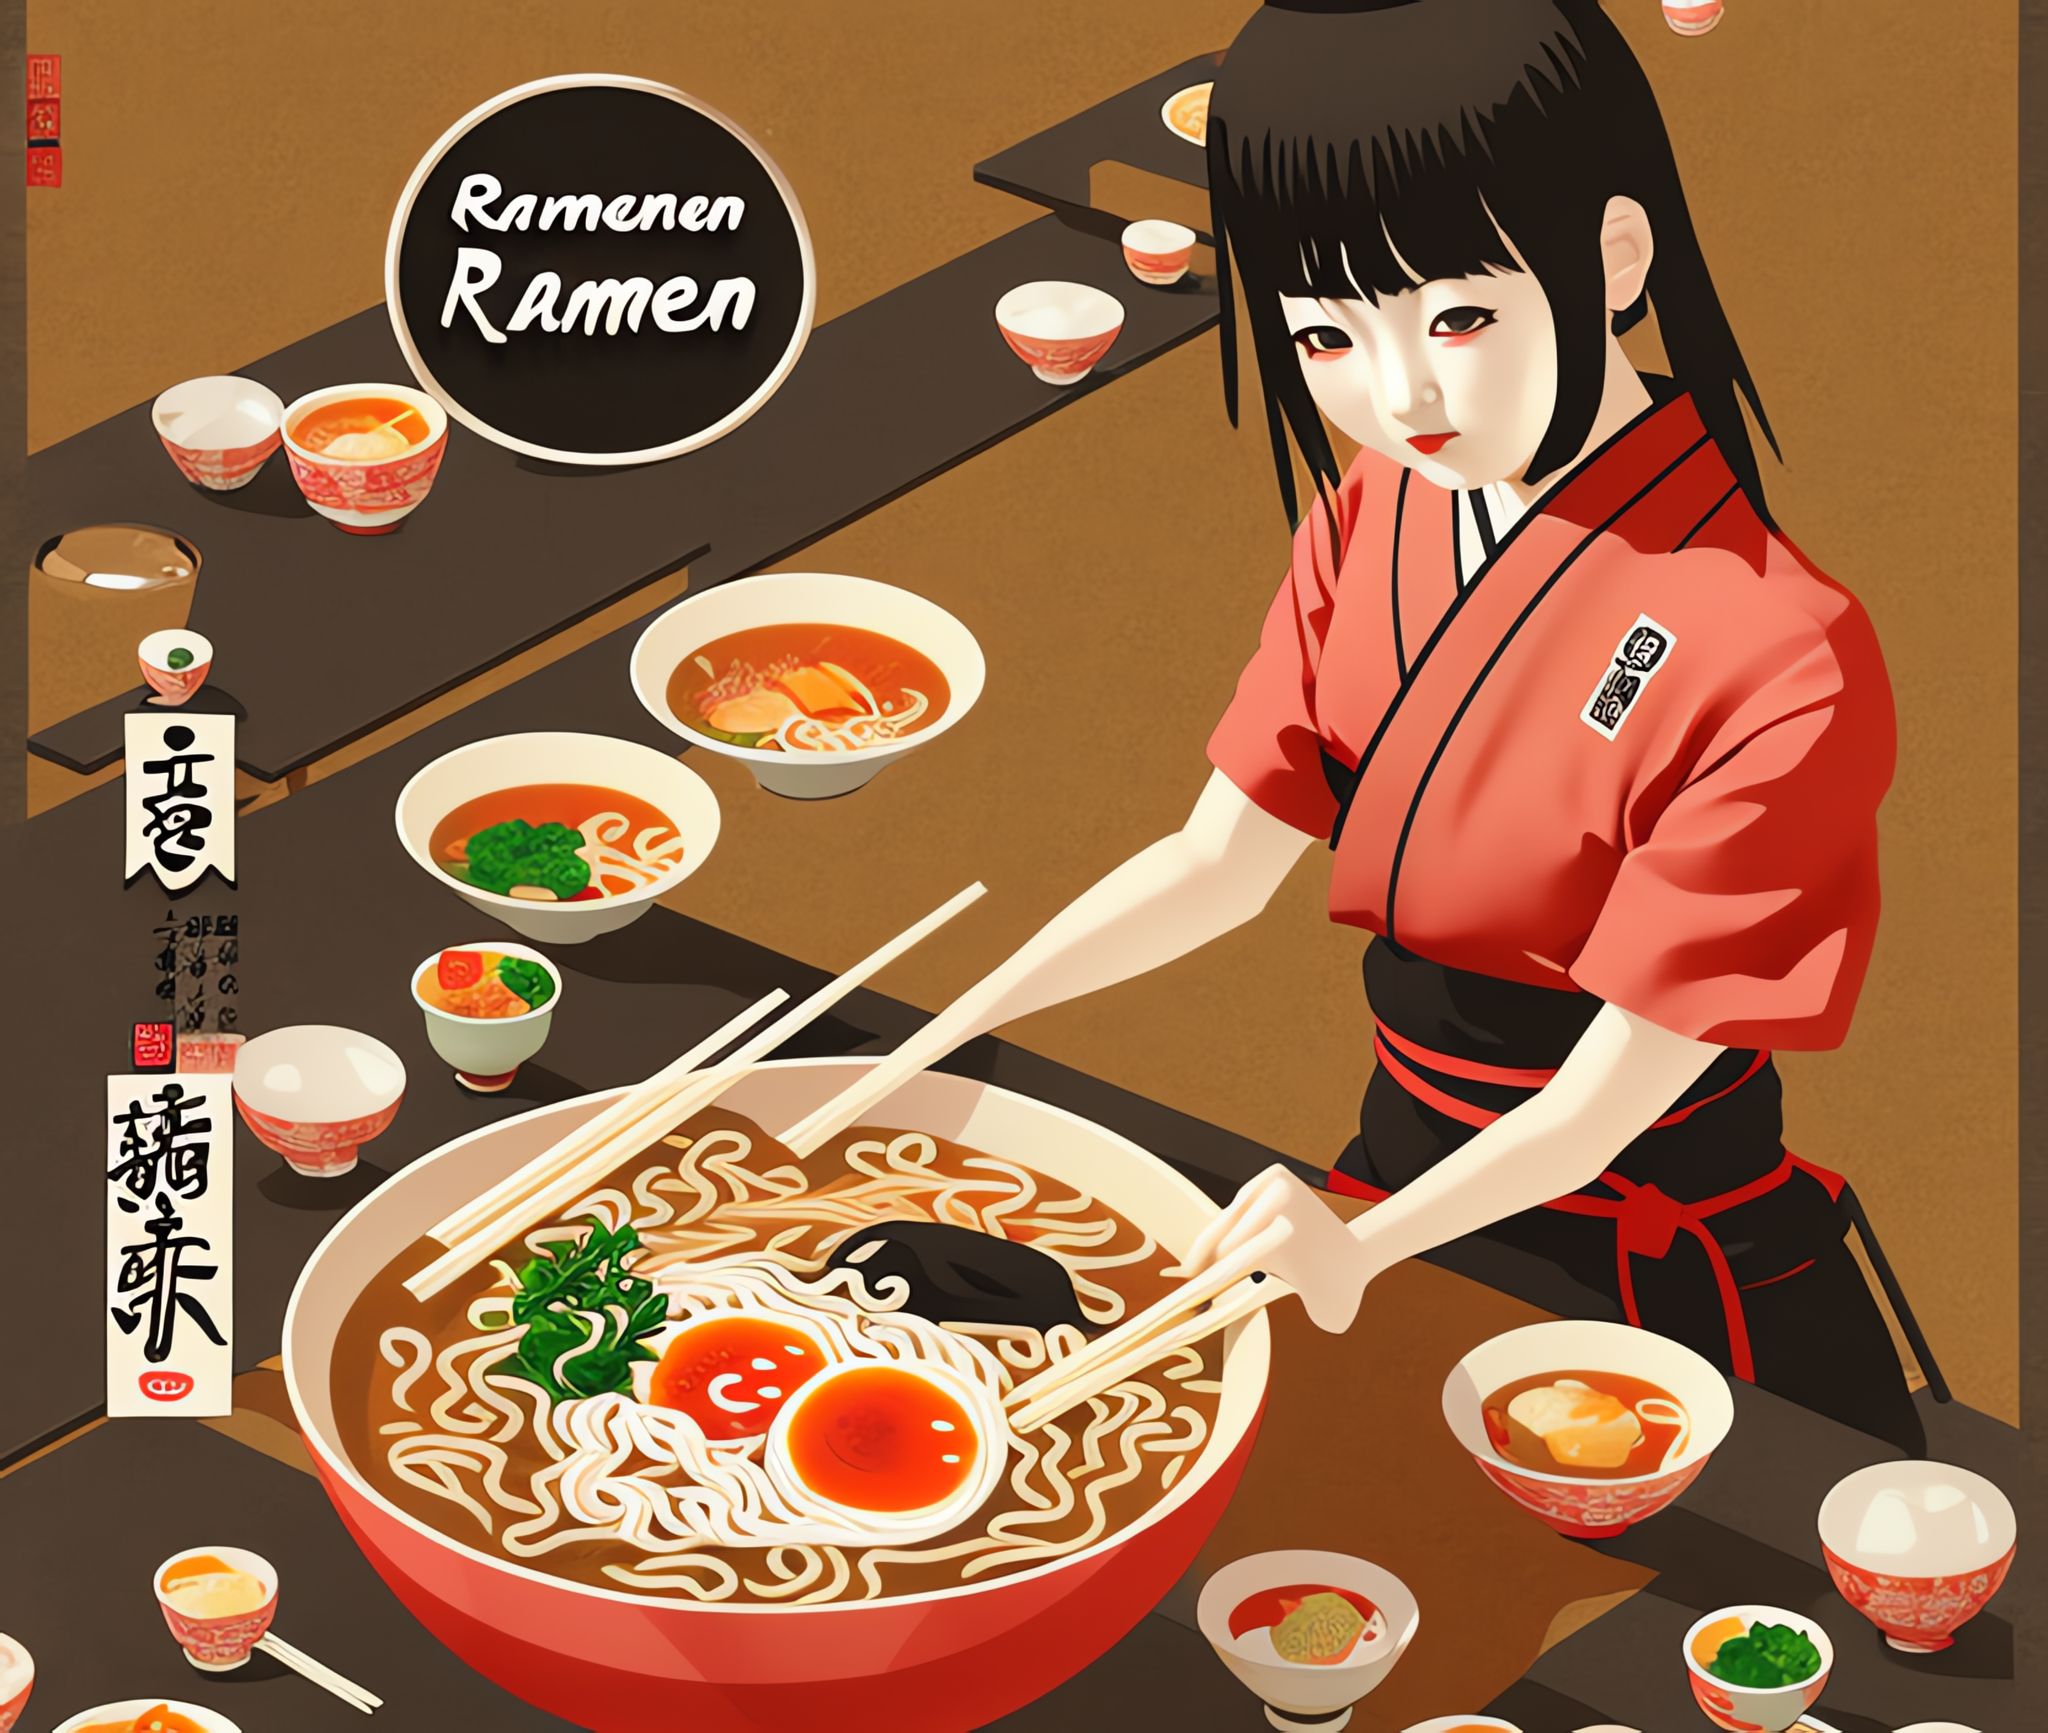 Ramen-restaurant-Japanese-girl-art-work-cgi-art-Japanese-food-delicious-restaurant-poster-v-ubrk